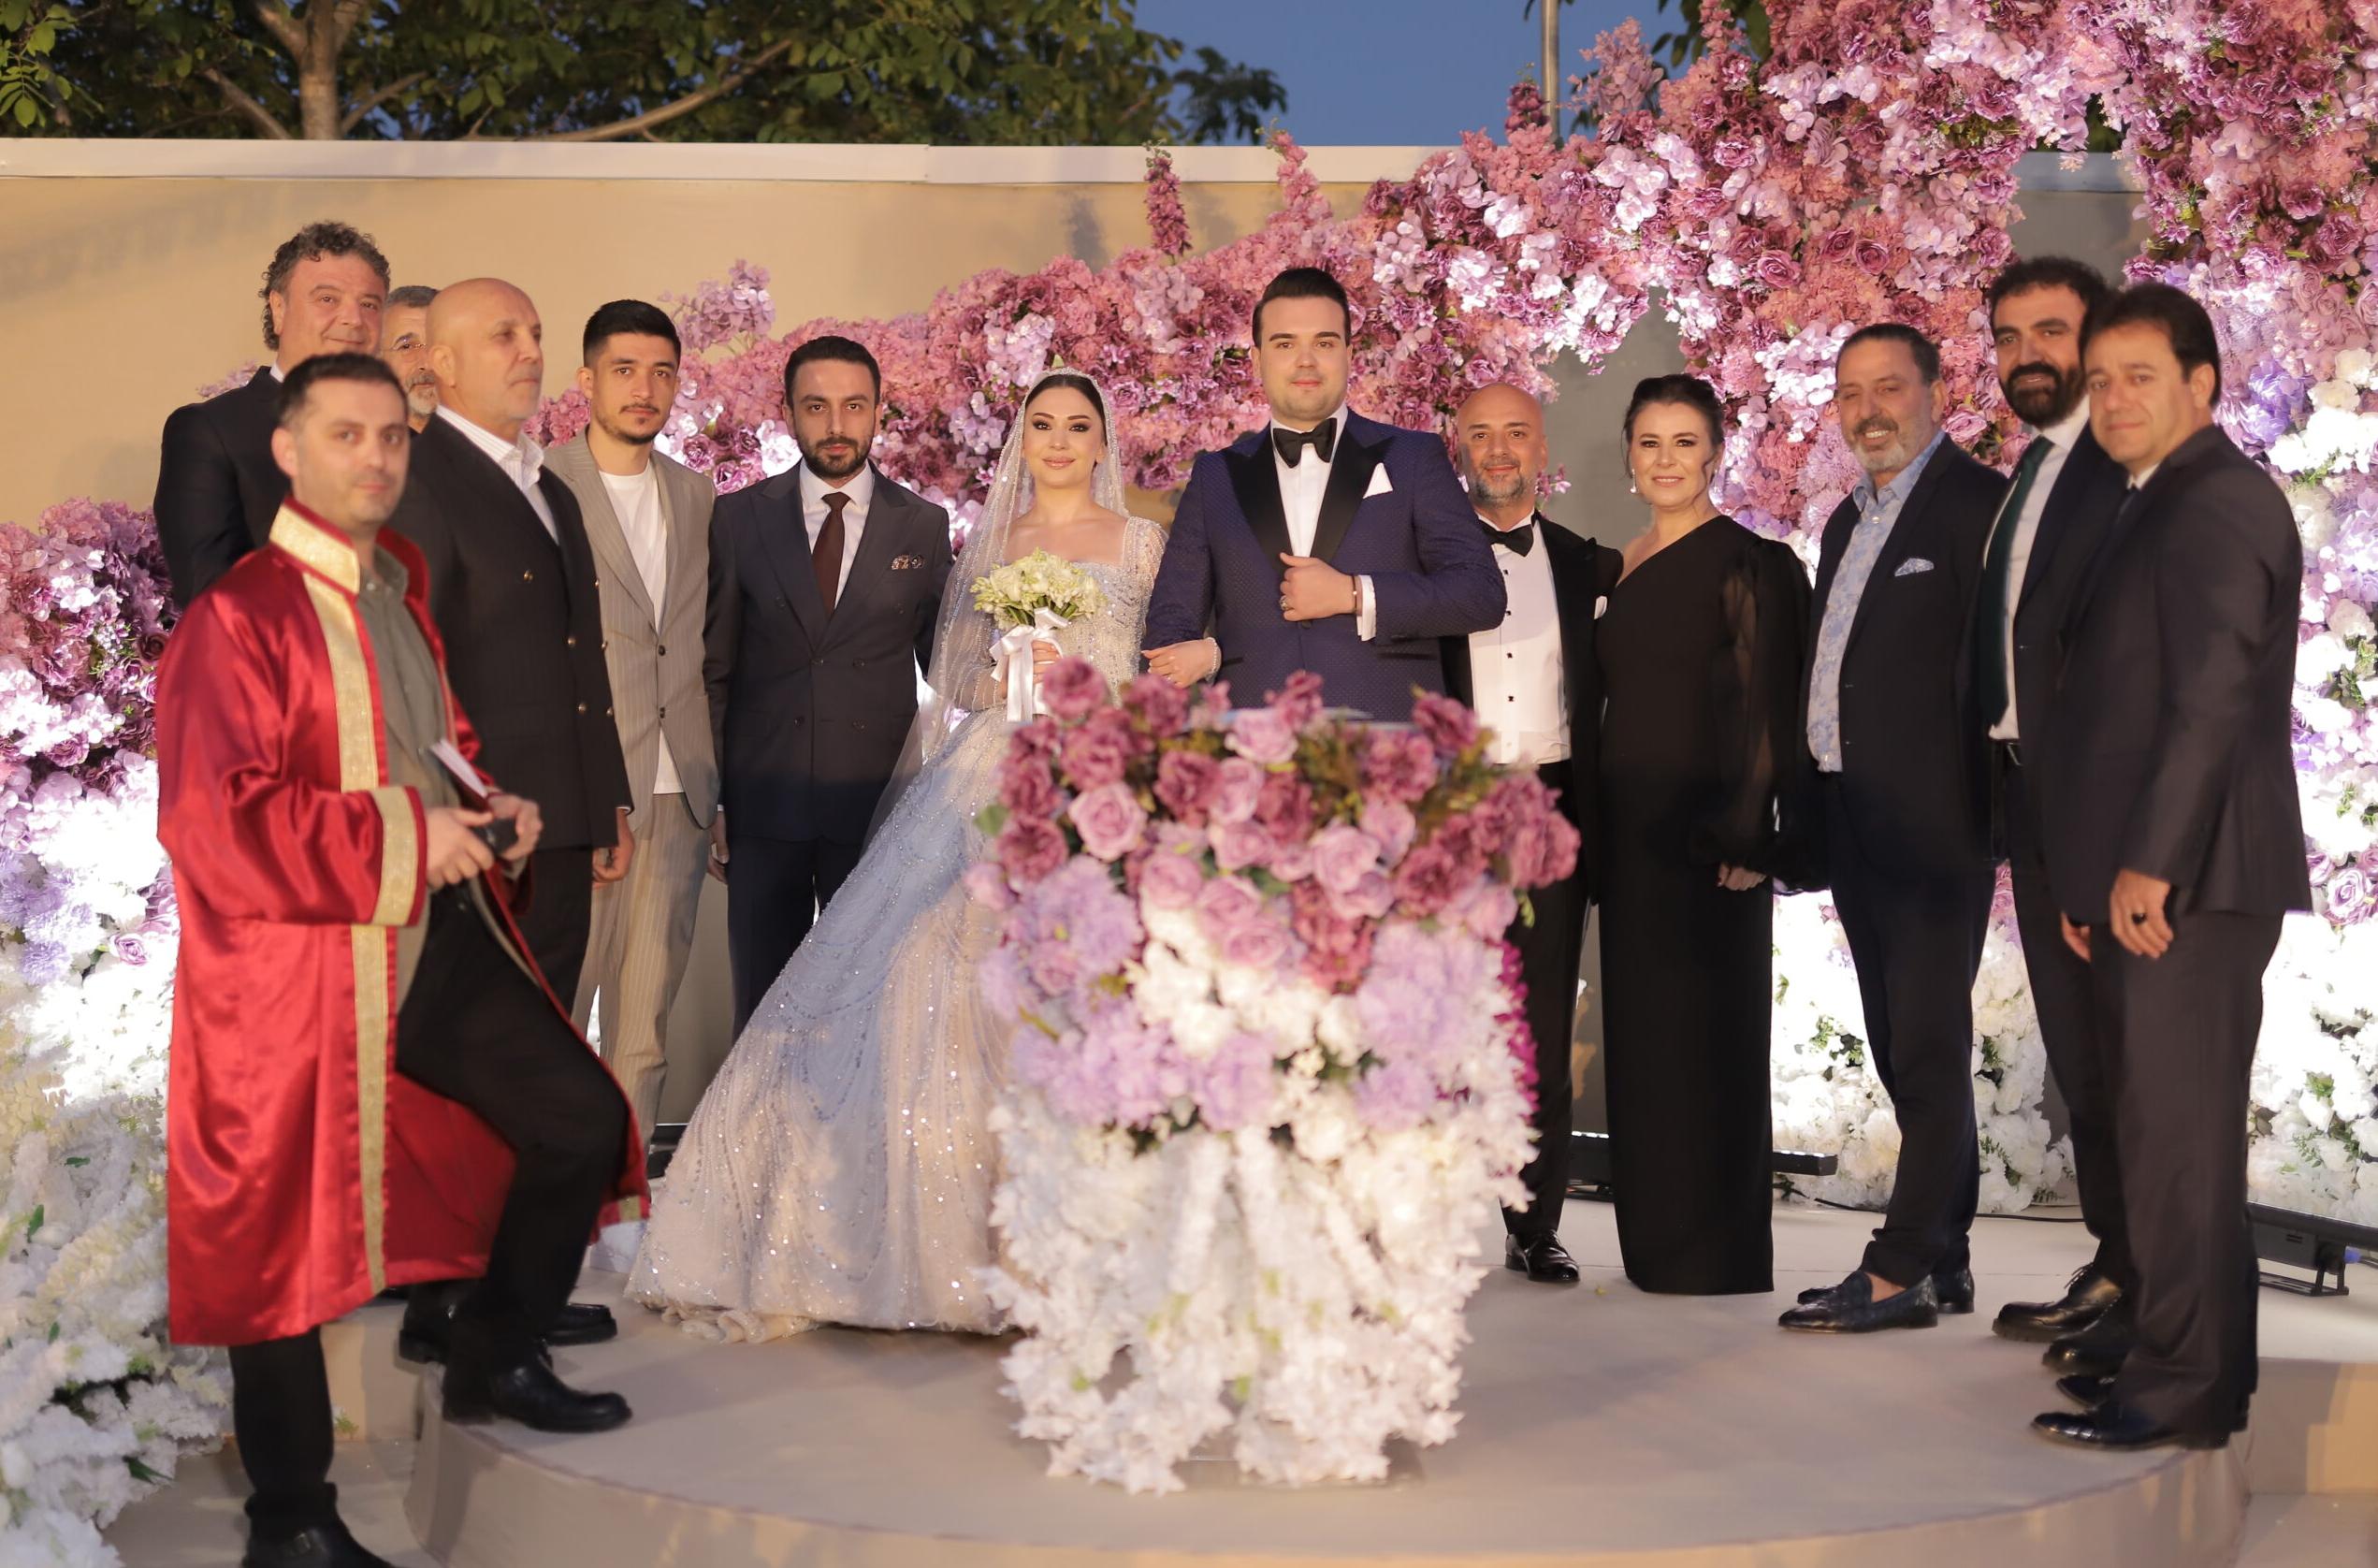 Ünlü İş Adamı Erhan Ceylan’ın Kızı Melisa Ceylan, İş Adamı Ergün Akavcı’nın Oğlu Erdoğan Akavcı ile Evlendi!